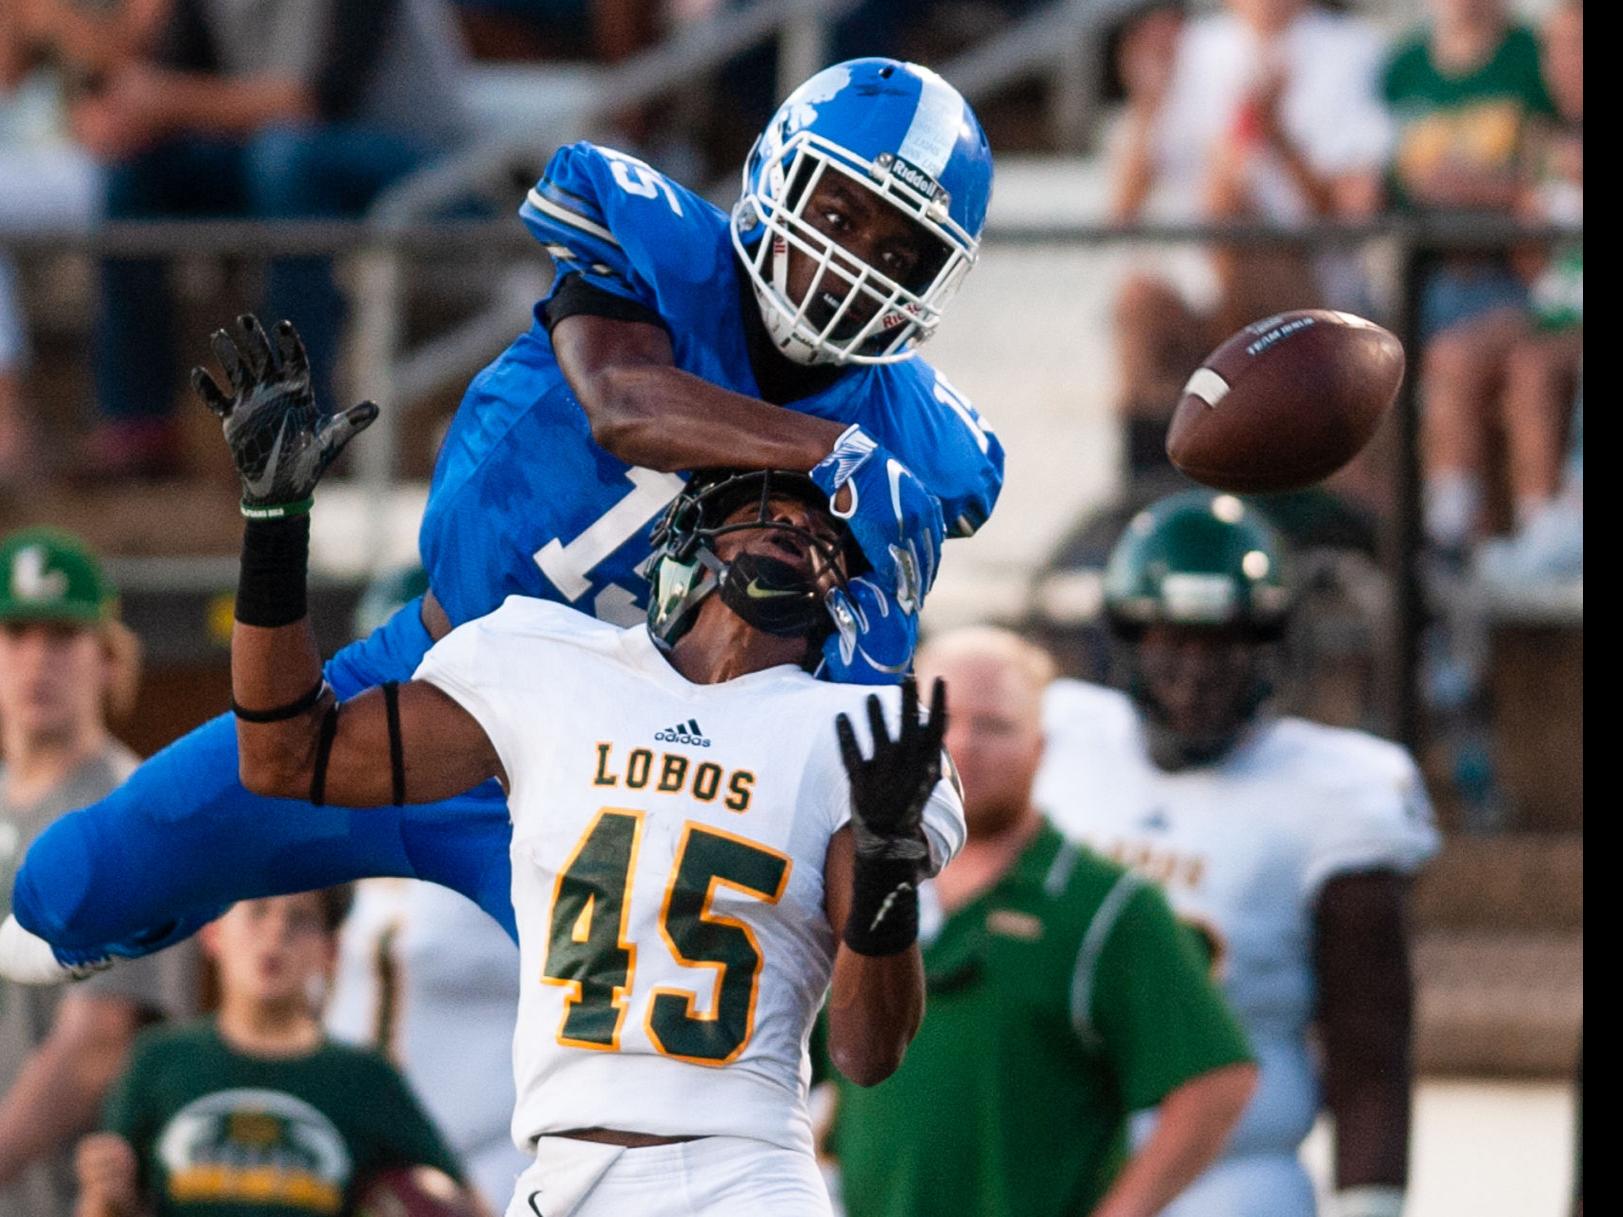 Jayce Nelson - 2015 - Football - Lamar University Athletics